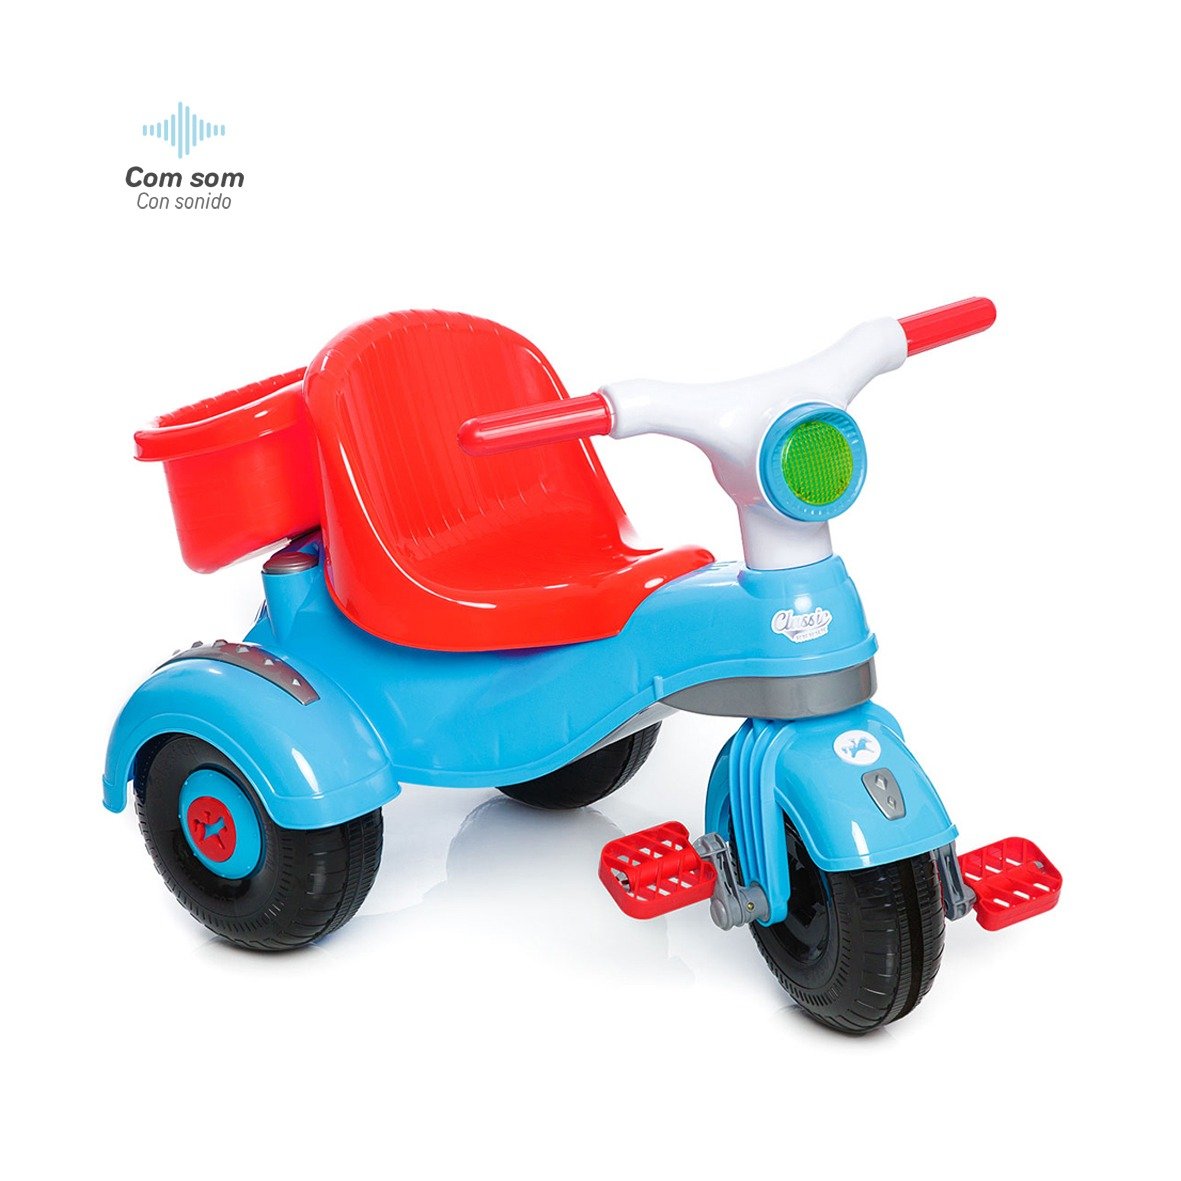 Motoca Infantil Triciclo Azul com Empurrador - Camilo's Variedades